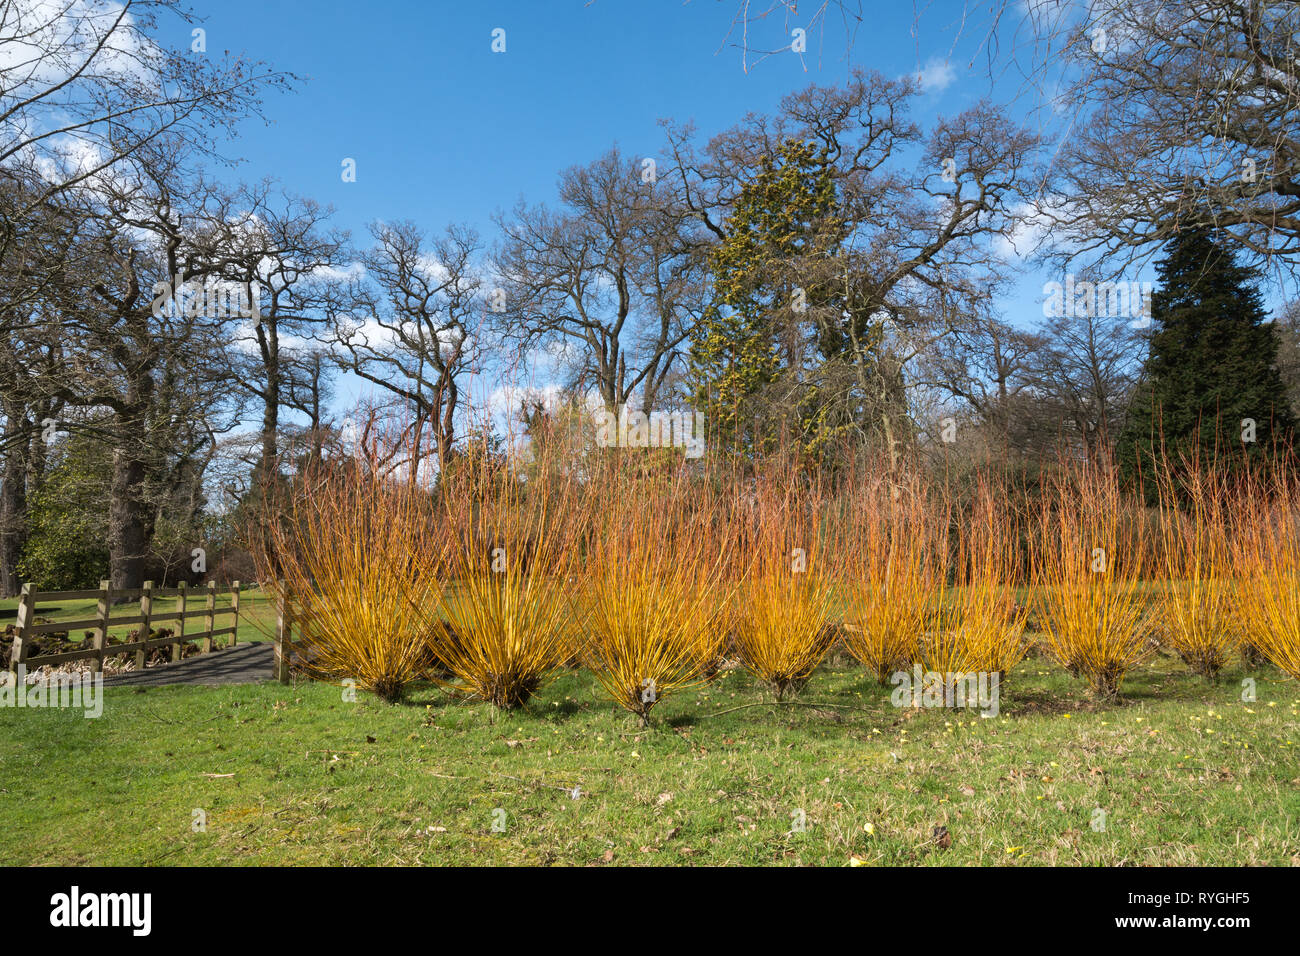 Savill Garden im März mit bunten stammt von Salix alba britzensis vitellina 'var' oder Scharlach Willow, Surrey/Berkshire, Großbritannien Stockfoto